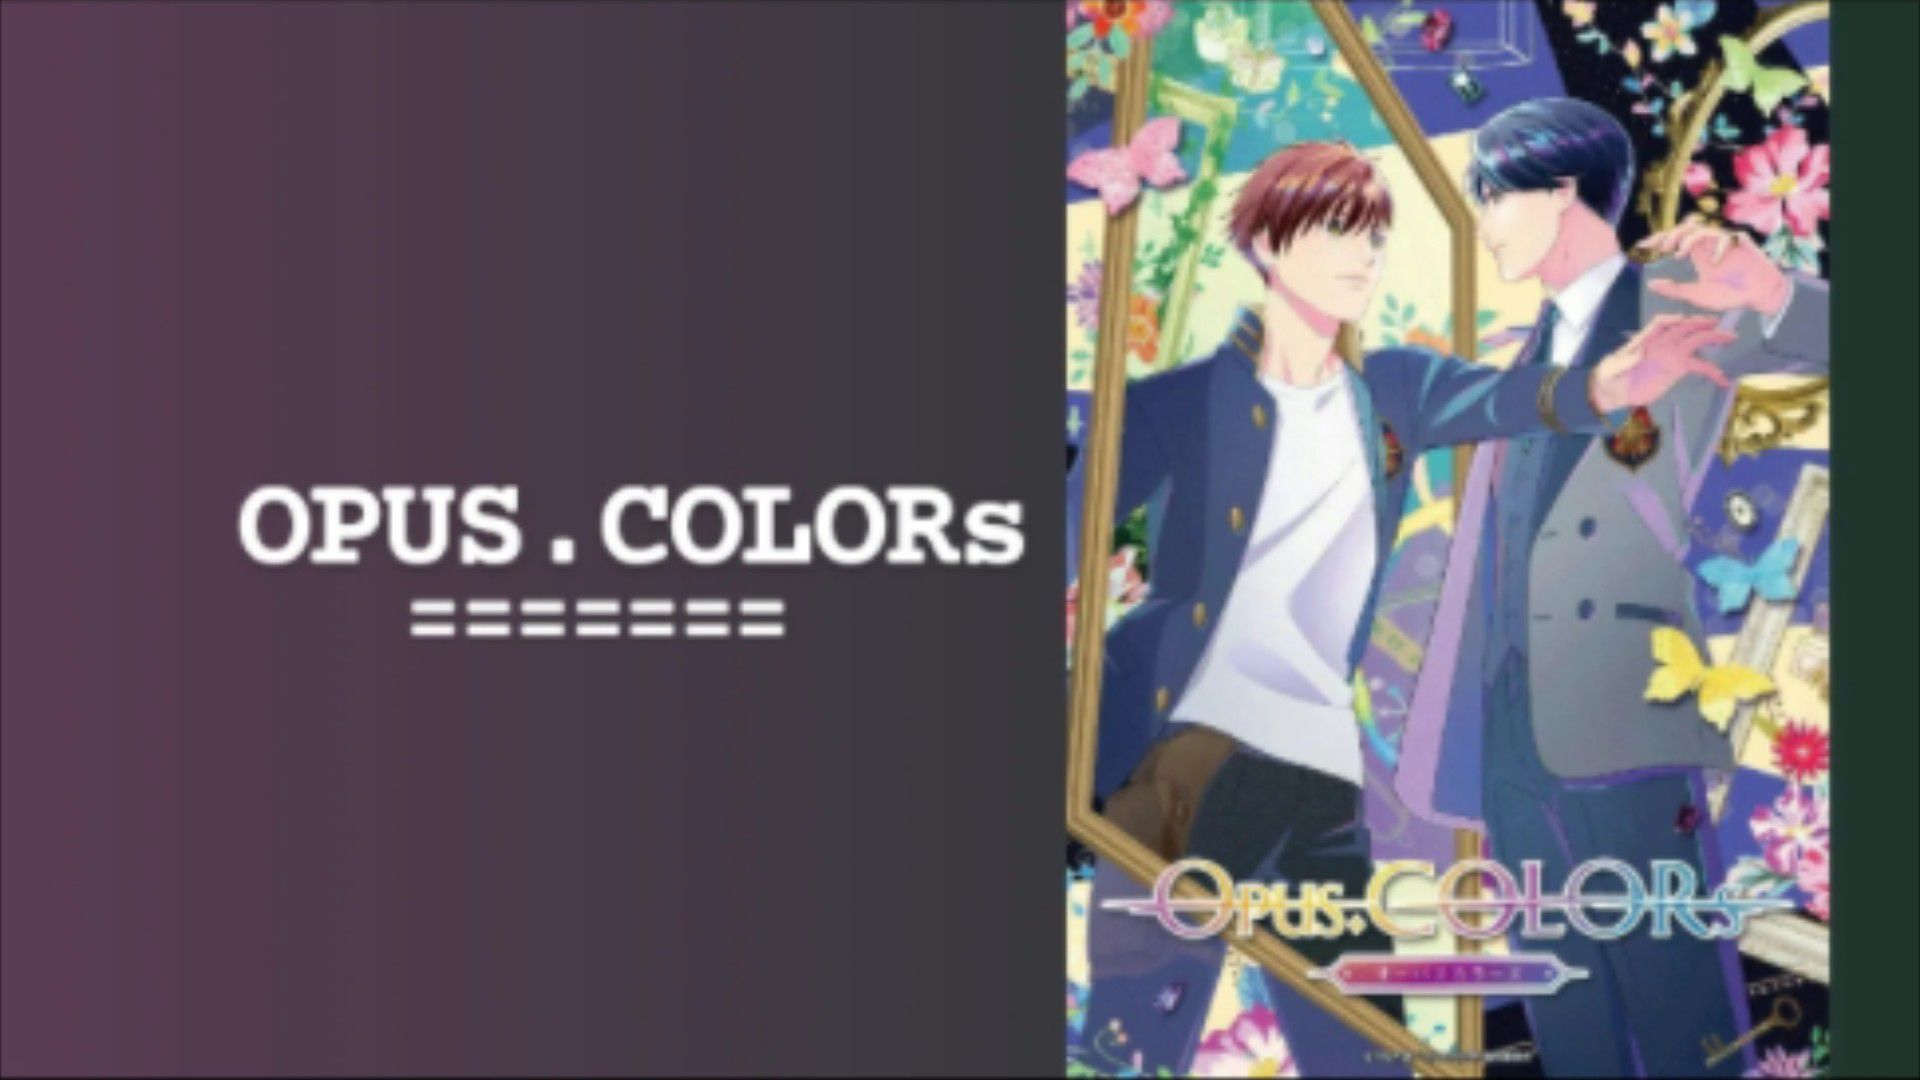 Opus Colors archivos - Mangaes - Donde vive el manga y el anime